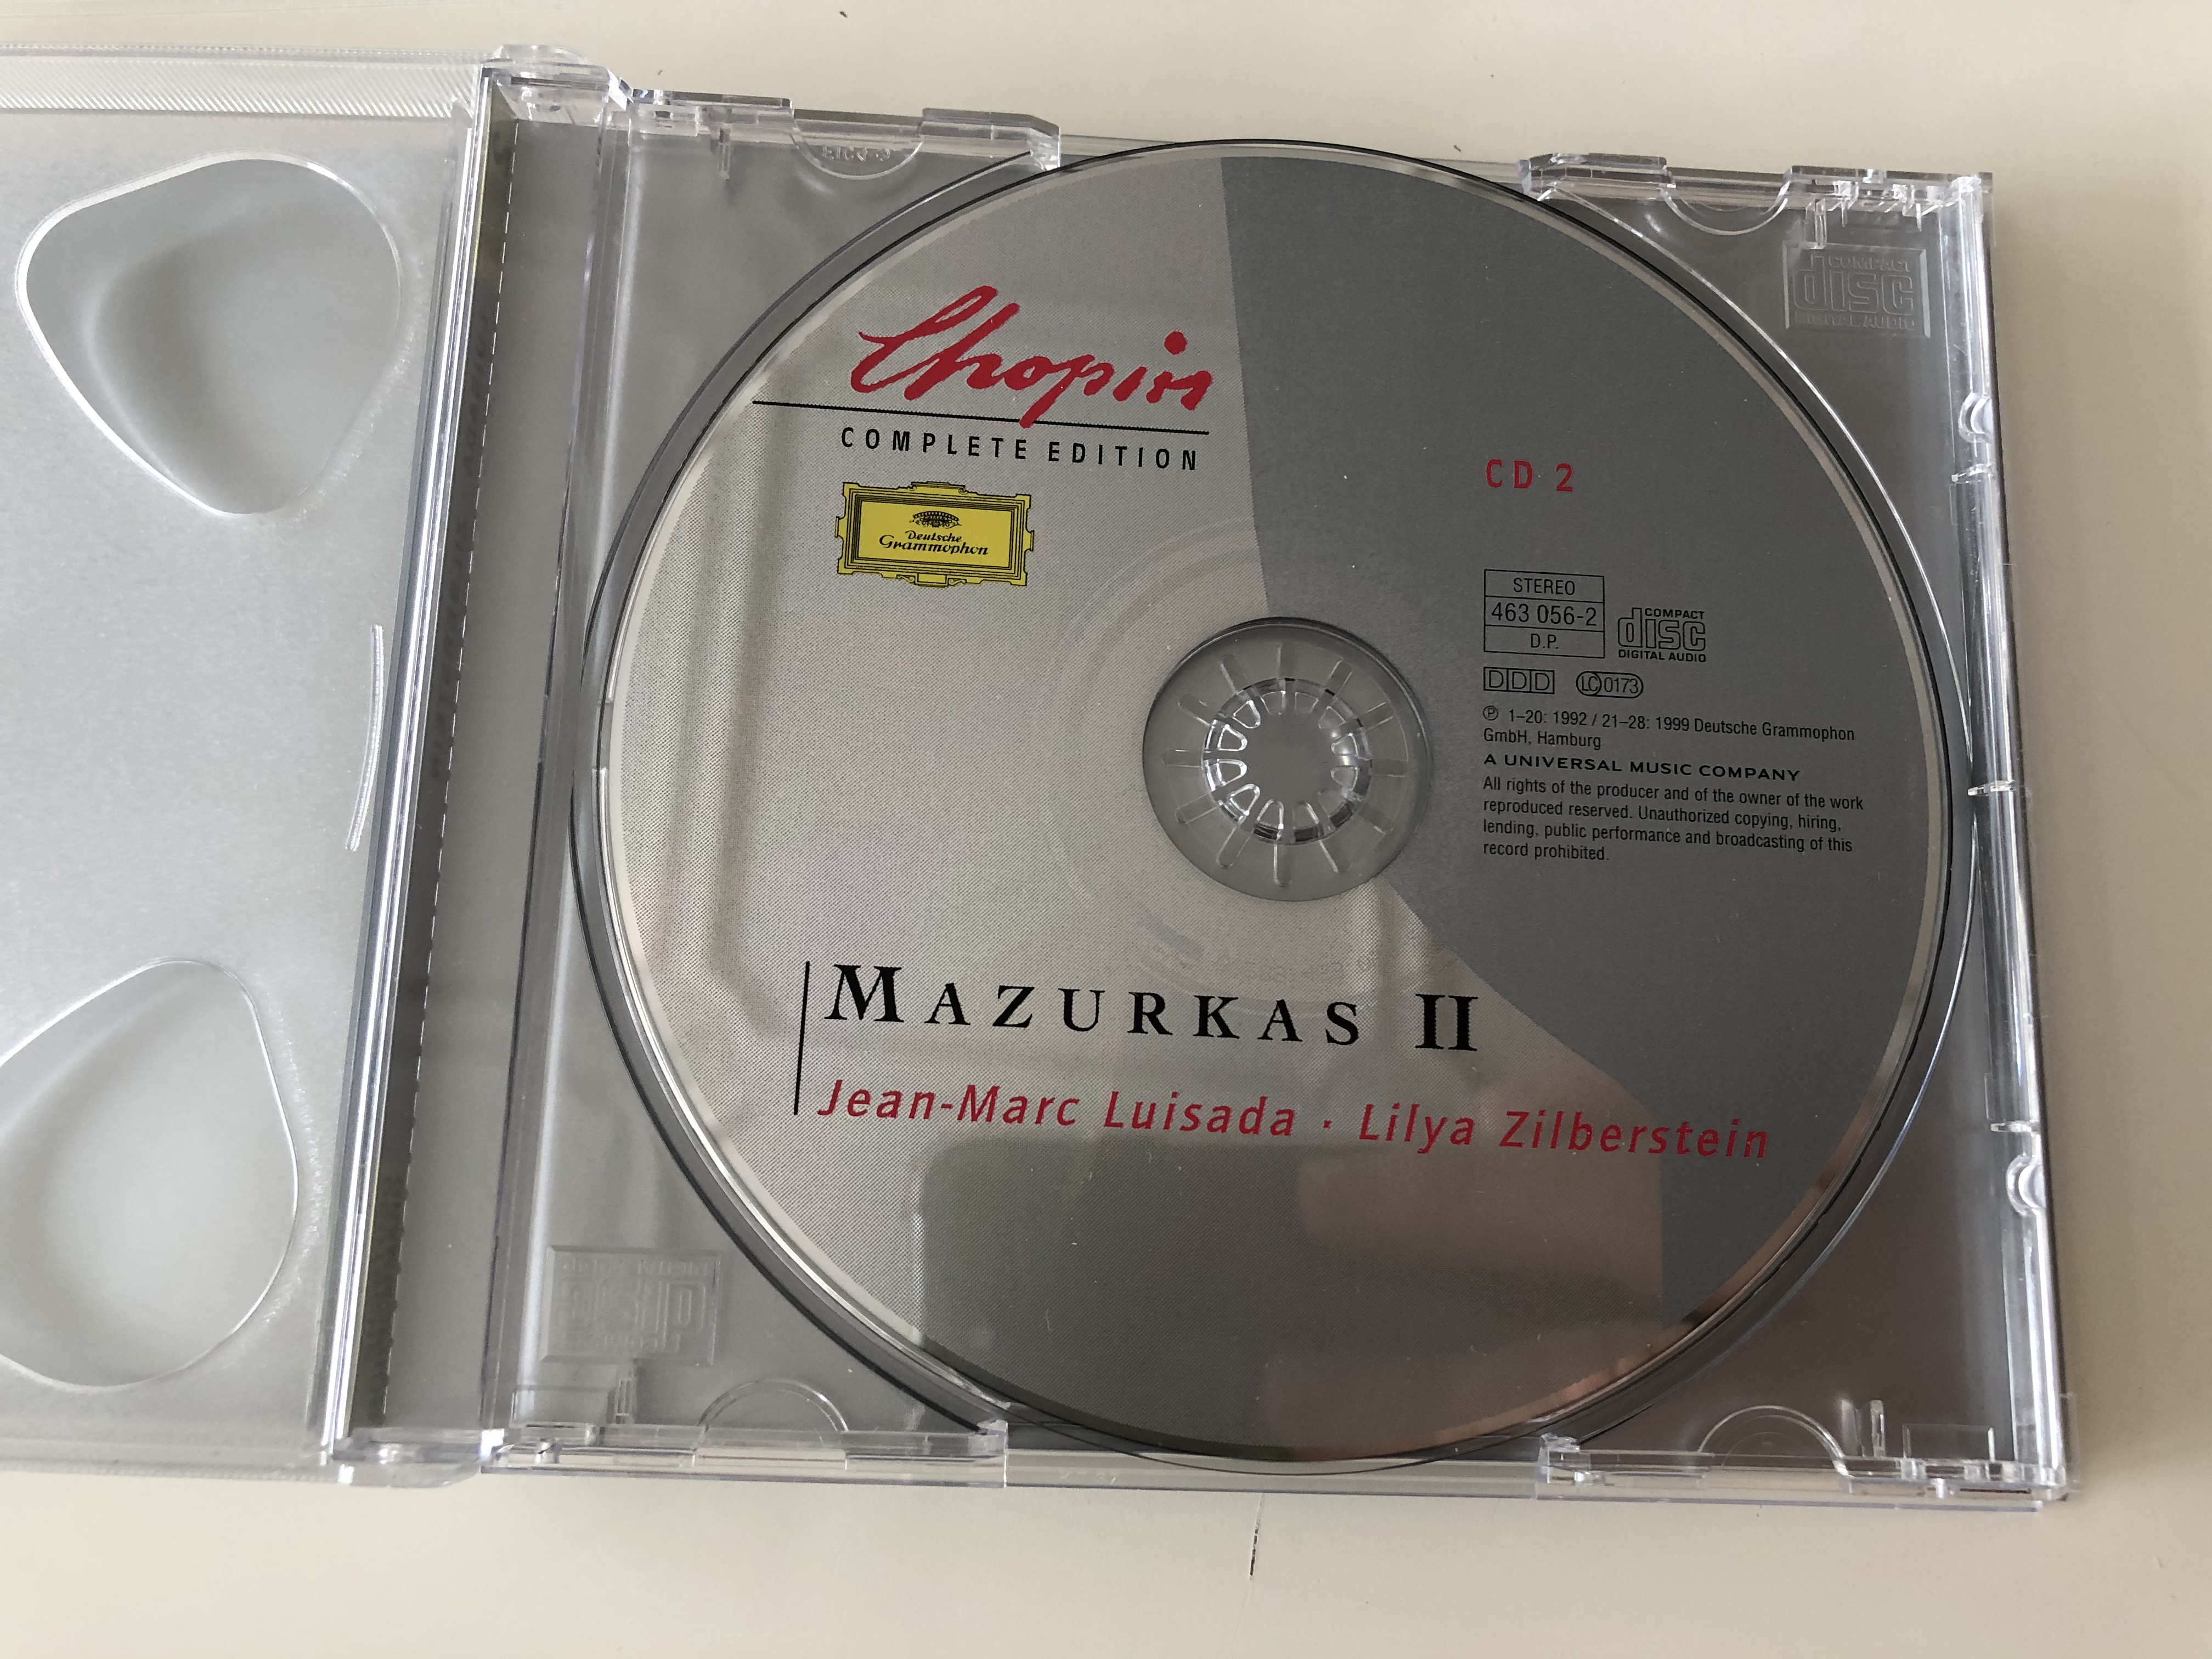 chopin-complete-edition-vol-iii-mazurkas-jean-marc-luisada-lilya-zilberstein-deutsche-grammophon-2x-audio-cd-stereo-463-054-2-3-.jpg